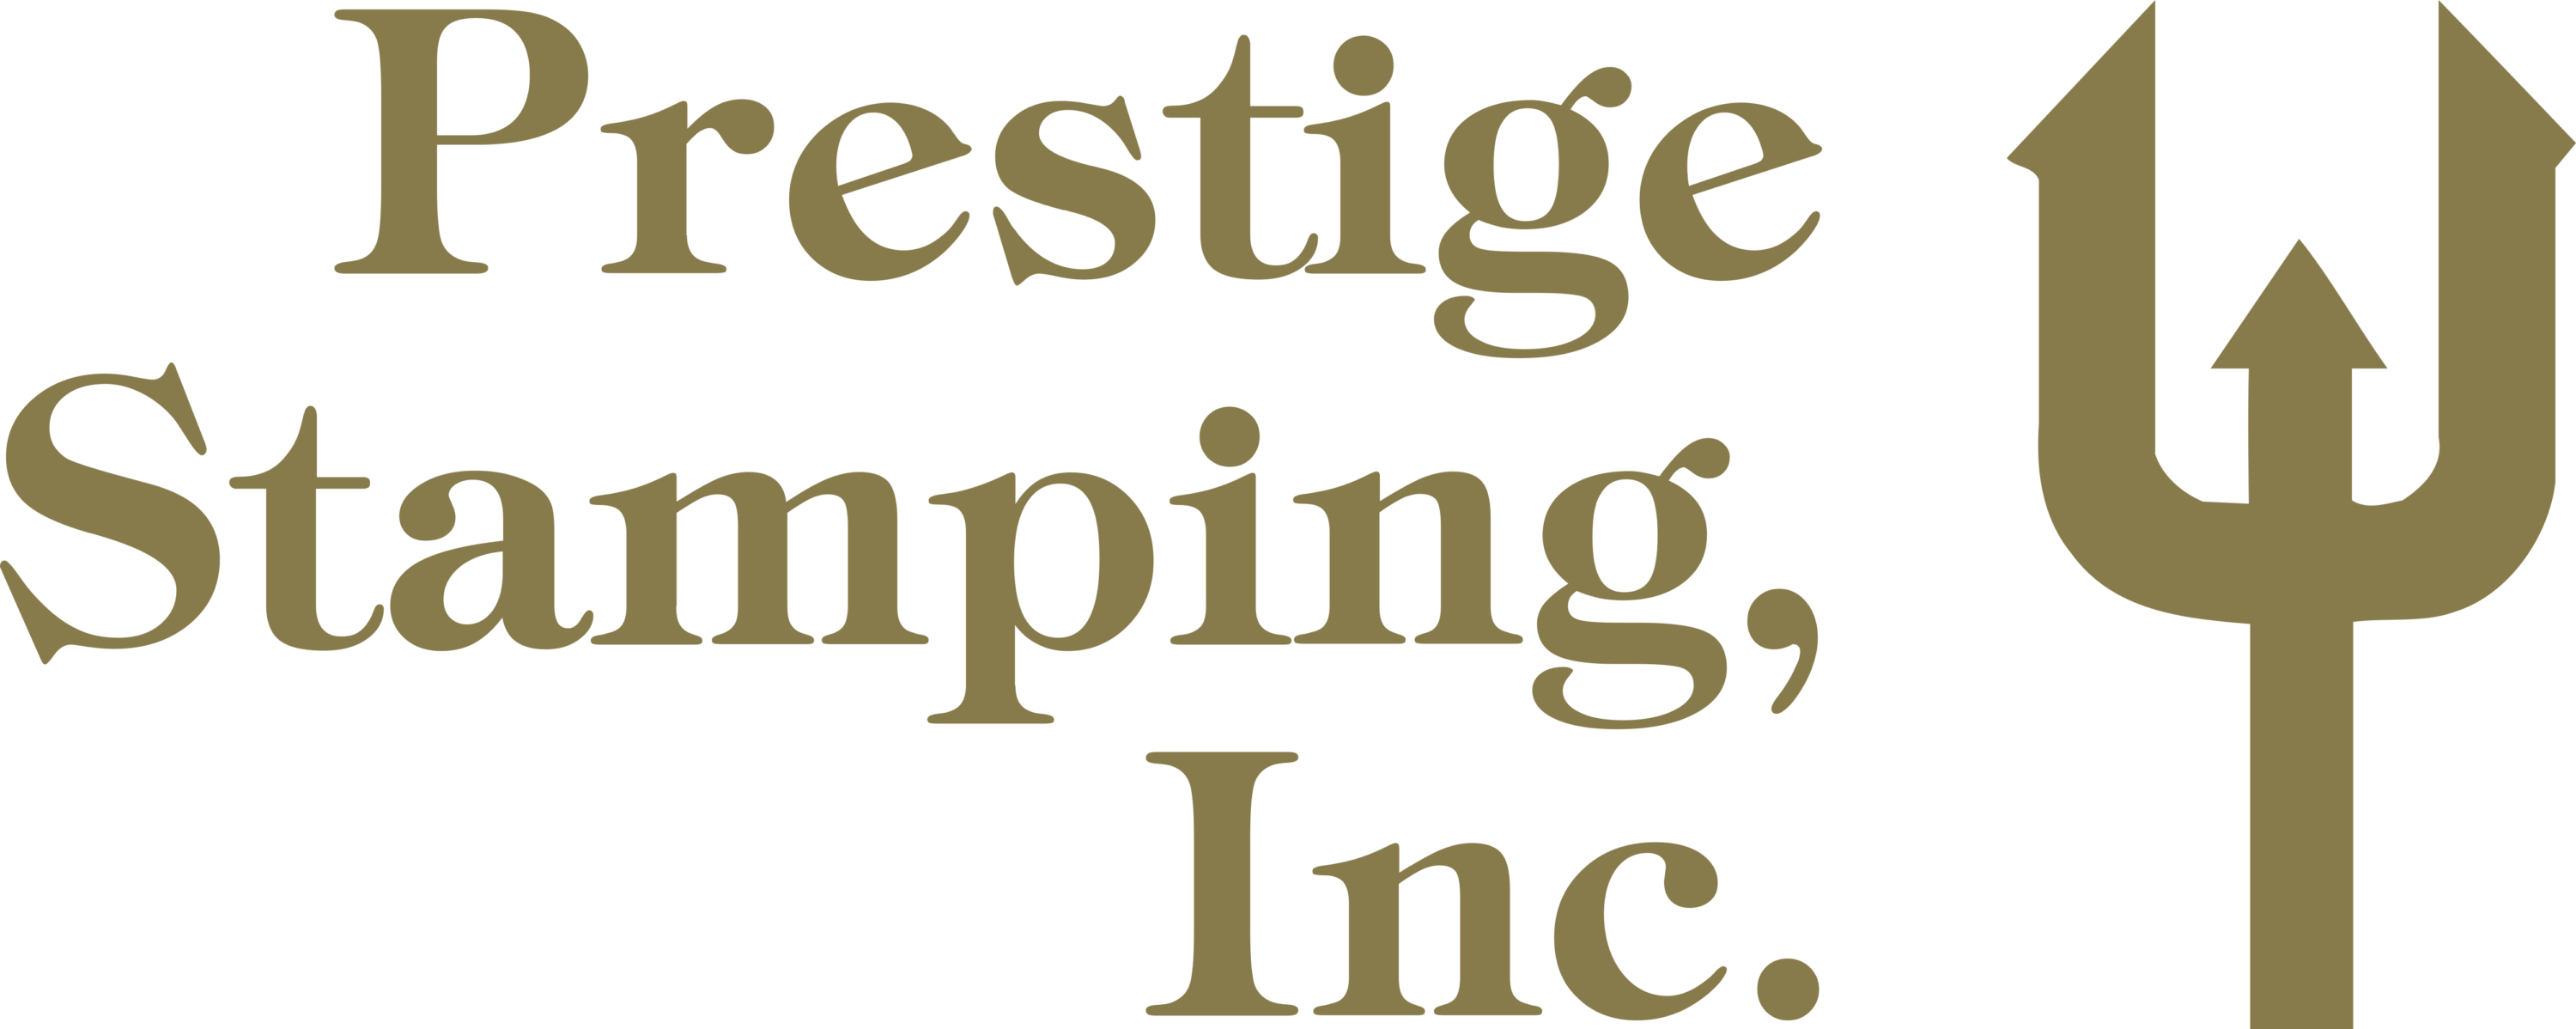 Prestige Stamping Inc Logo